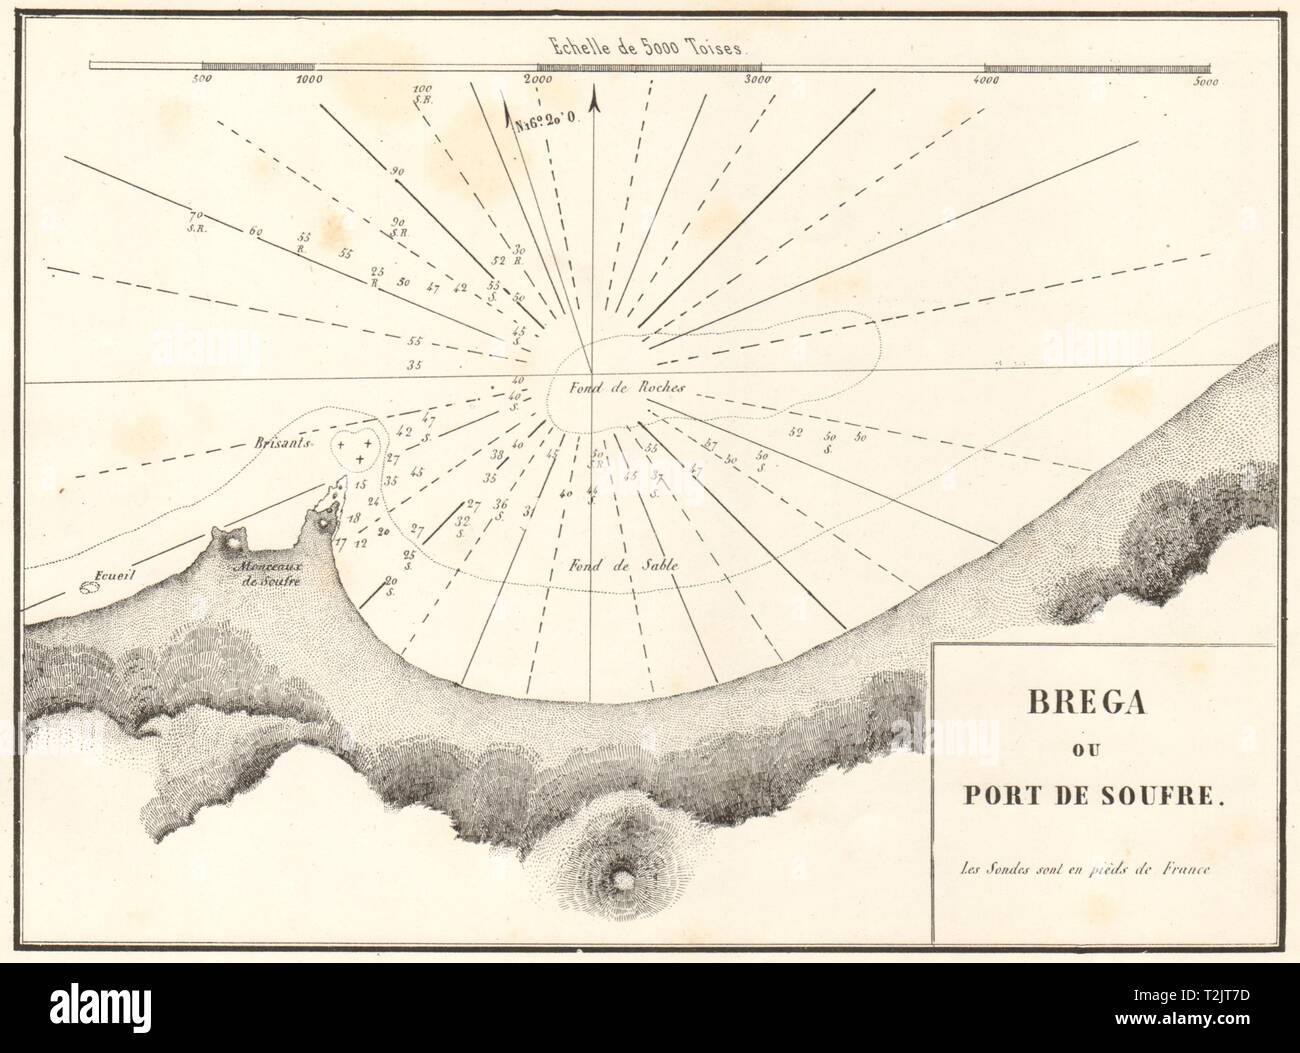 Marsa al Brega. 'Brega ou Port de Soufre'. Libya. GAUTTIER 1854 old map Stock Photo